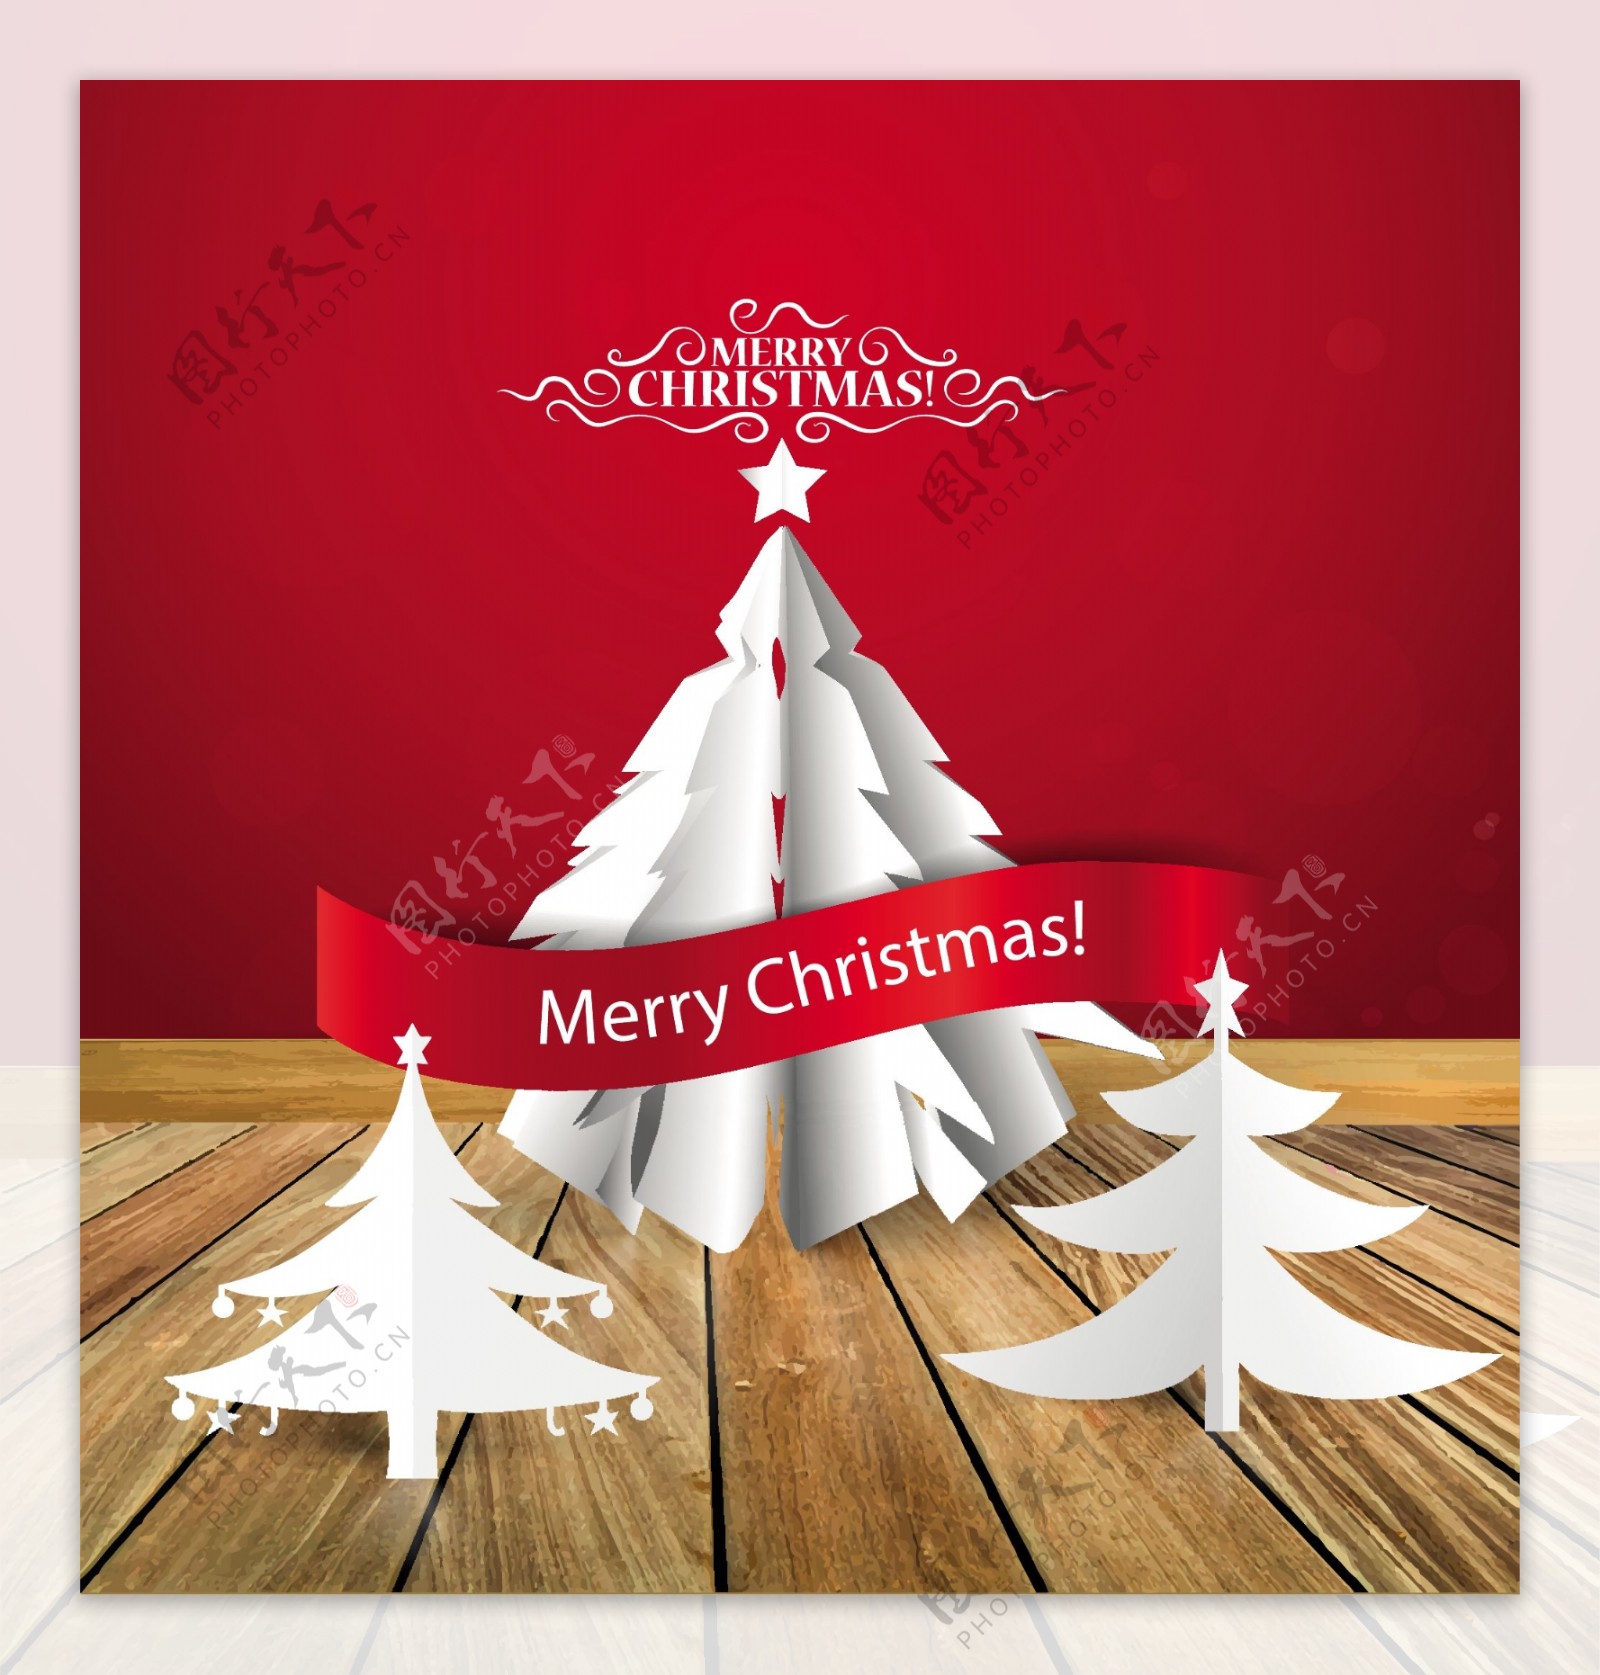 白色折纸圣诞树贺卡矢量素材.